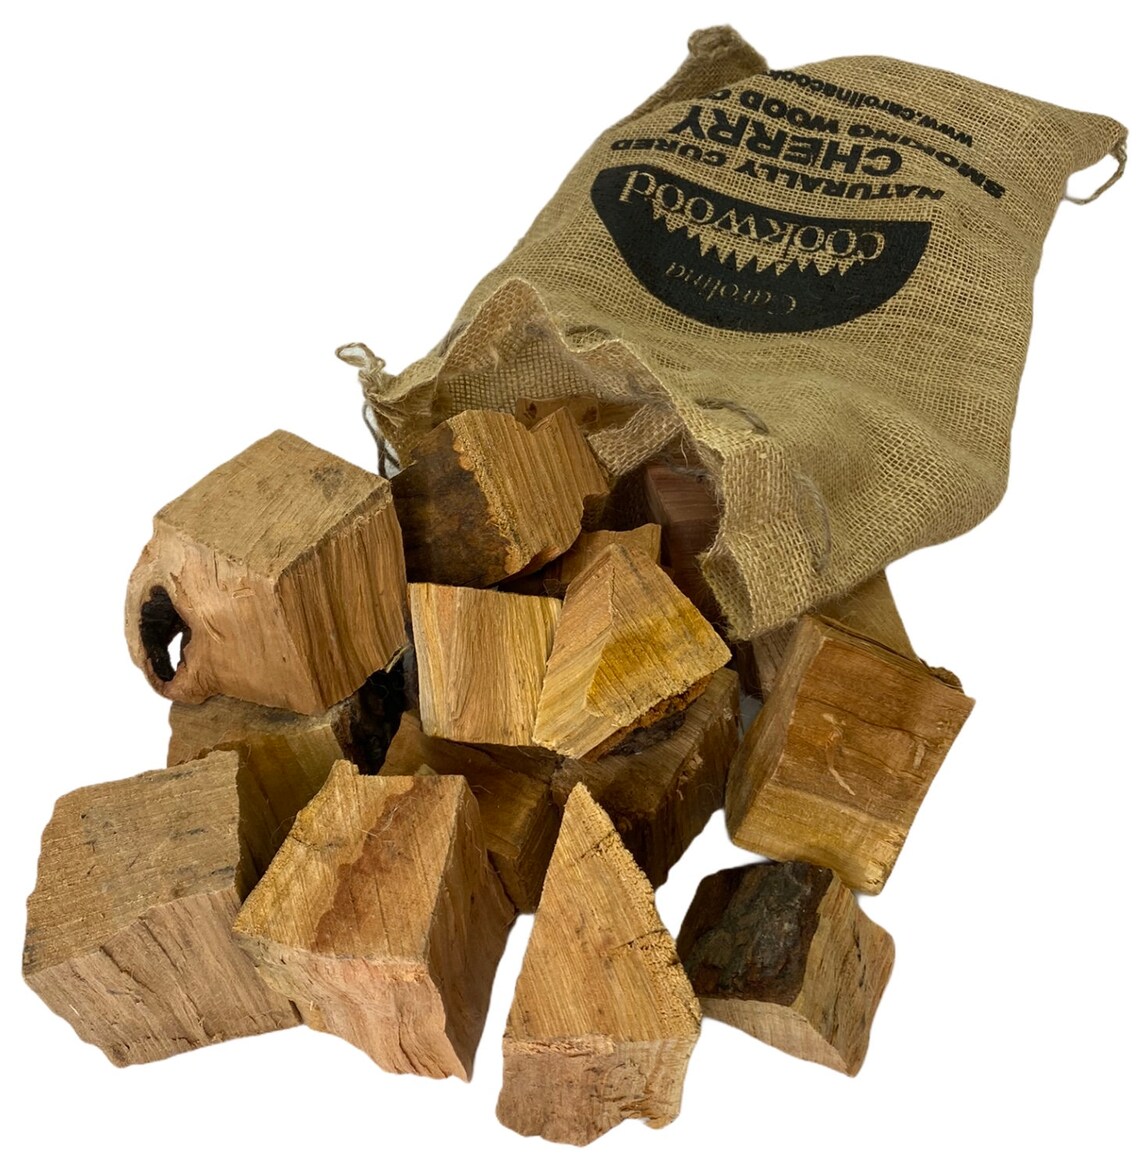 Carolina Cookwood Cherry Smoking Wood Chunks Best Wood For Etsy